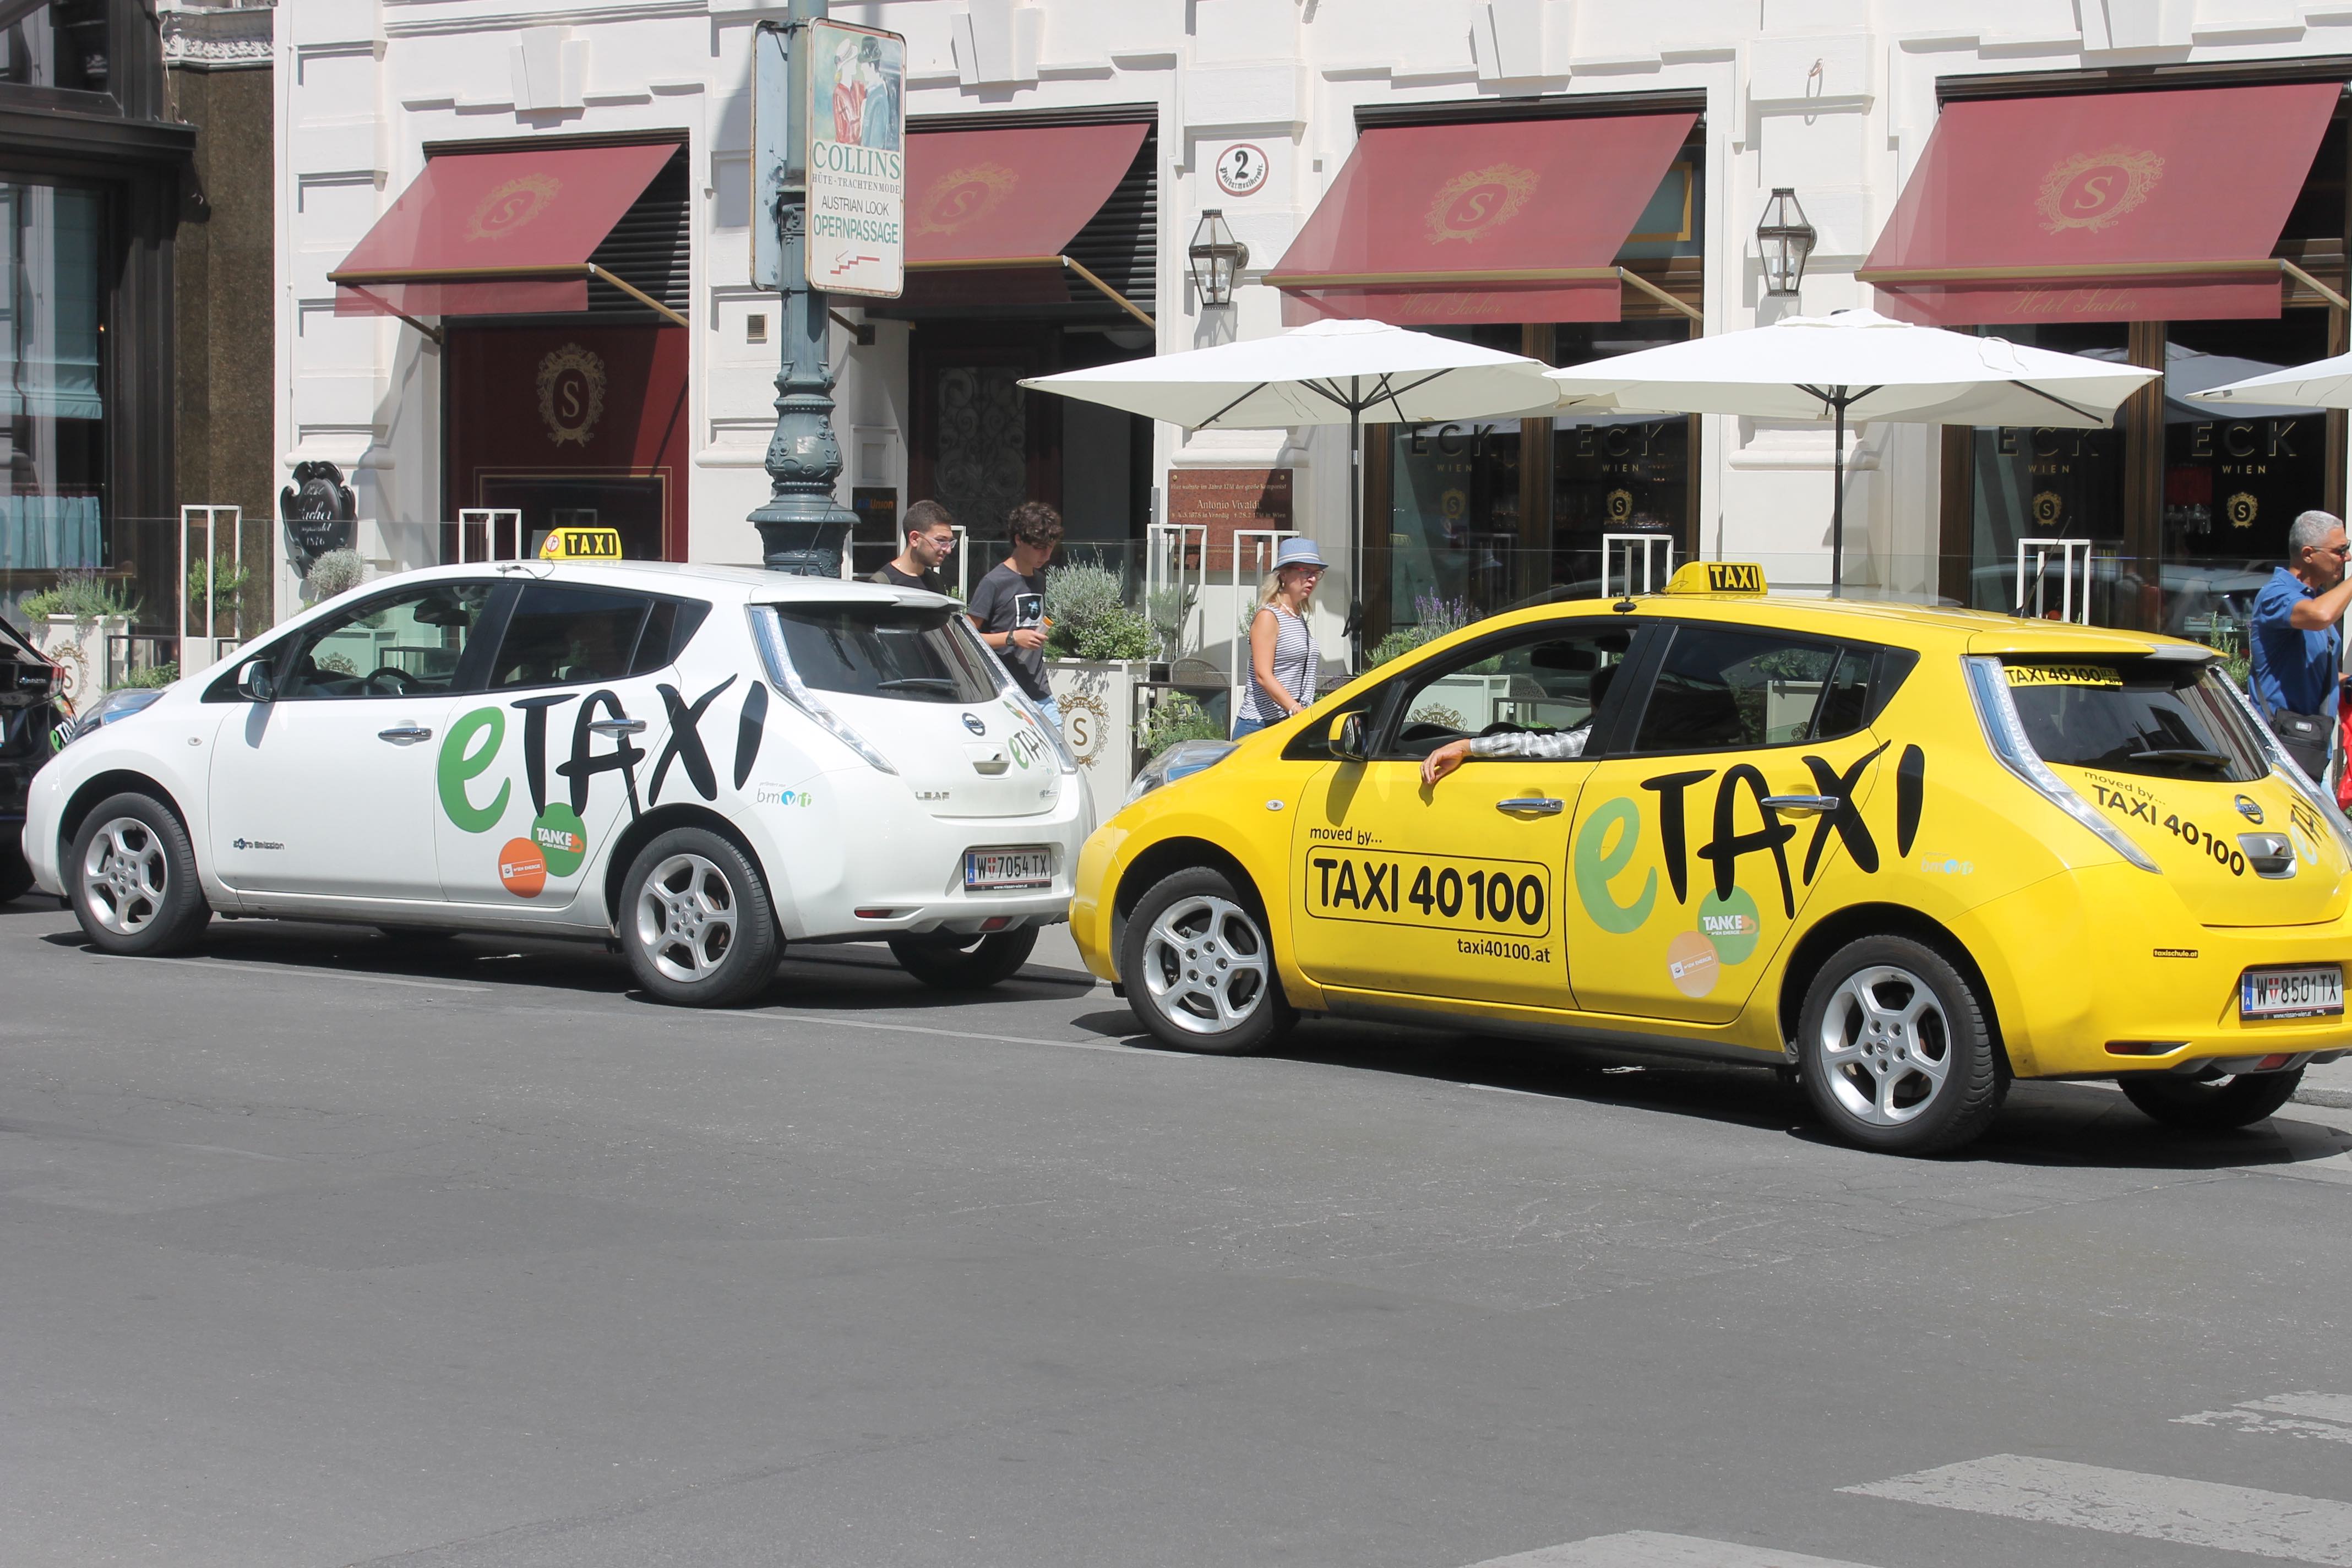 Blog: Mobiliteit in Wenen gaat veel verder dan e-Taxi…